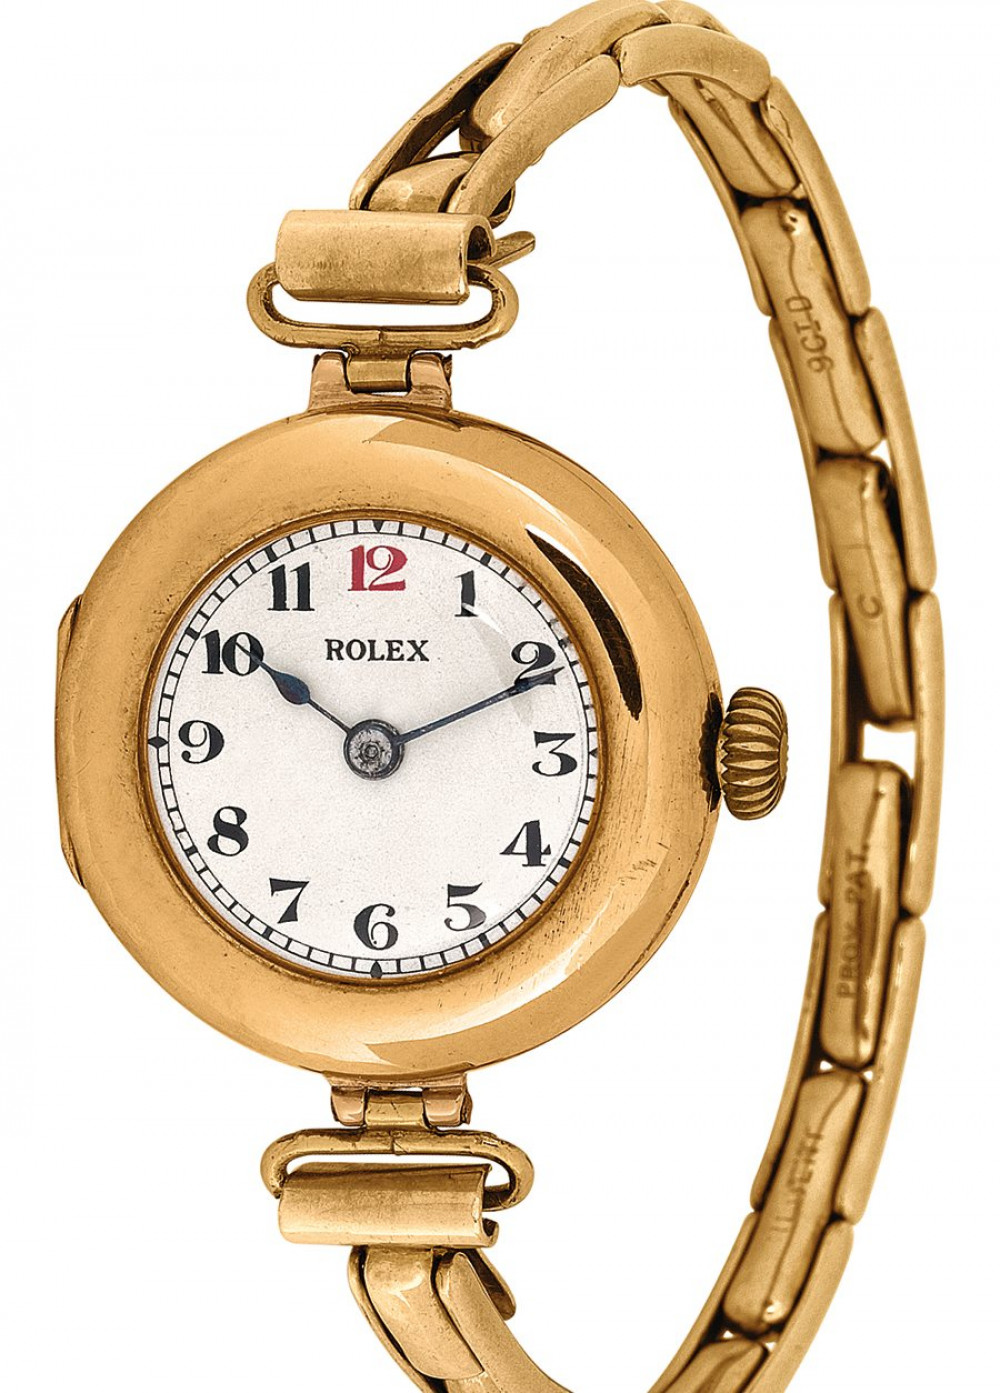 Zegarek firmy Rolex, model Modell von 1910